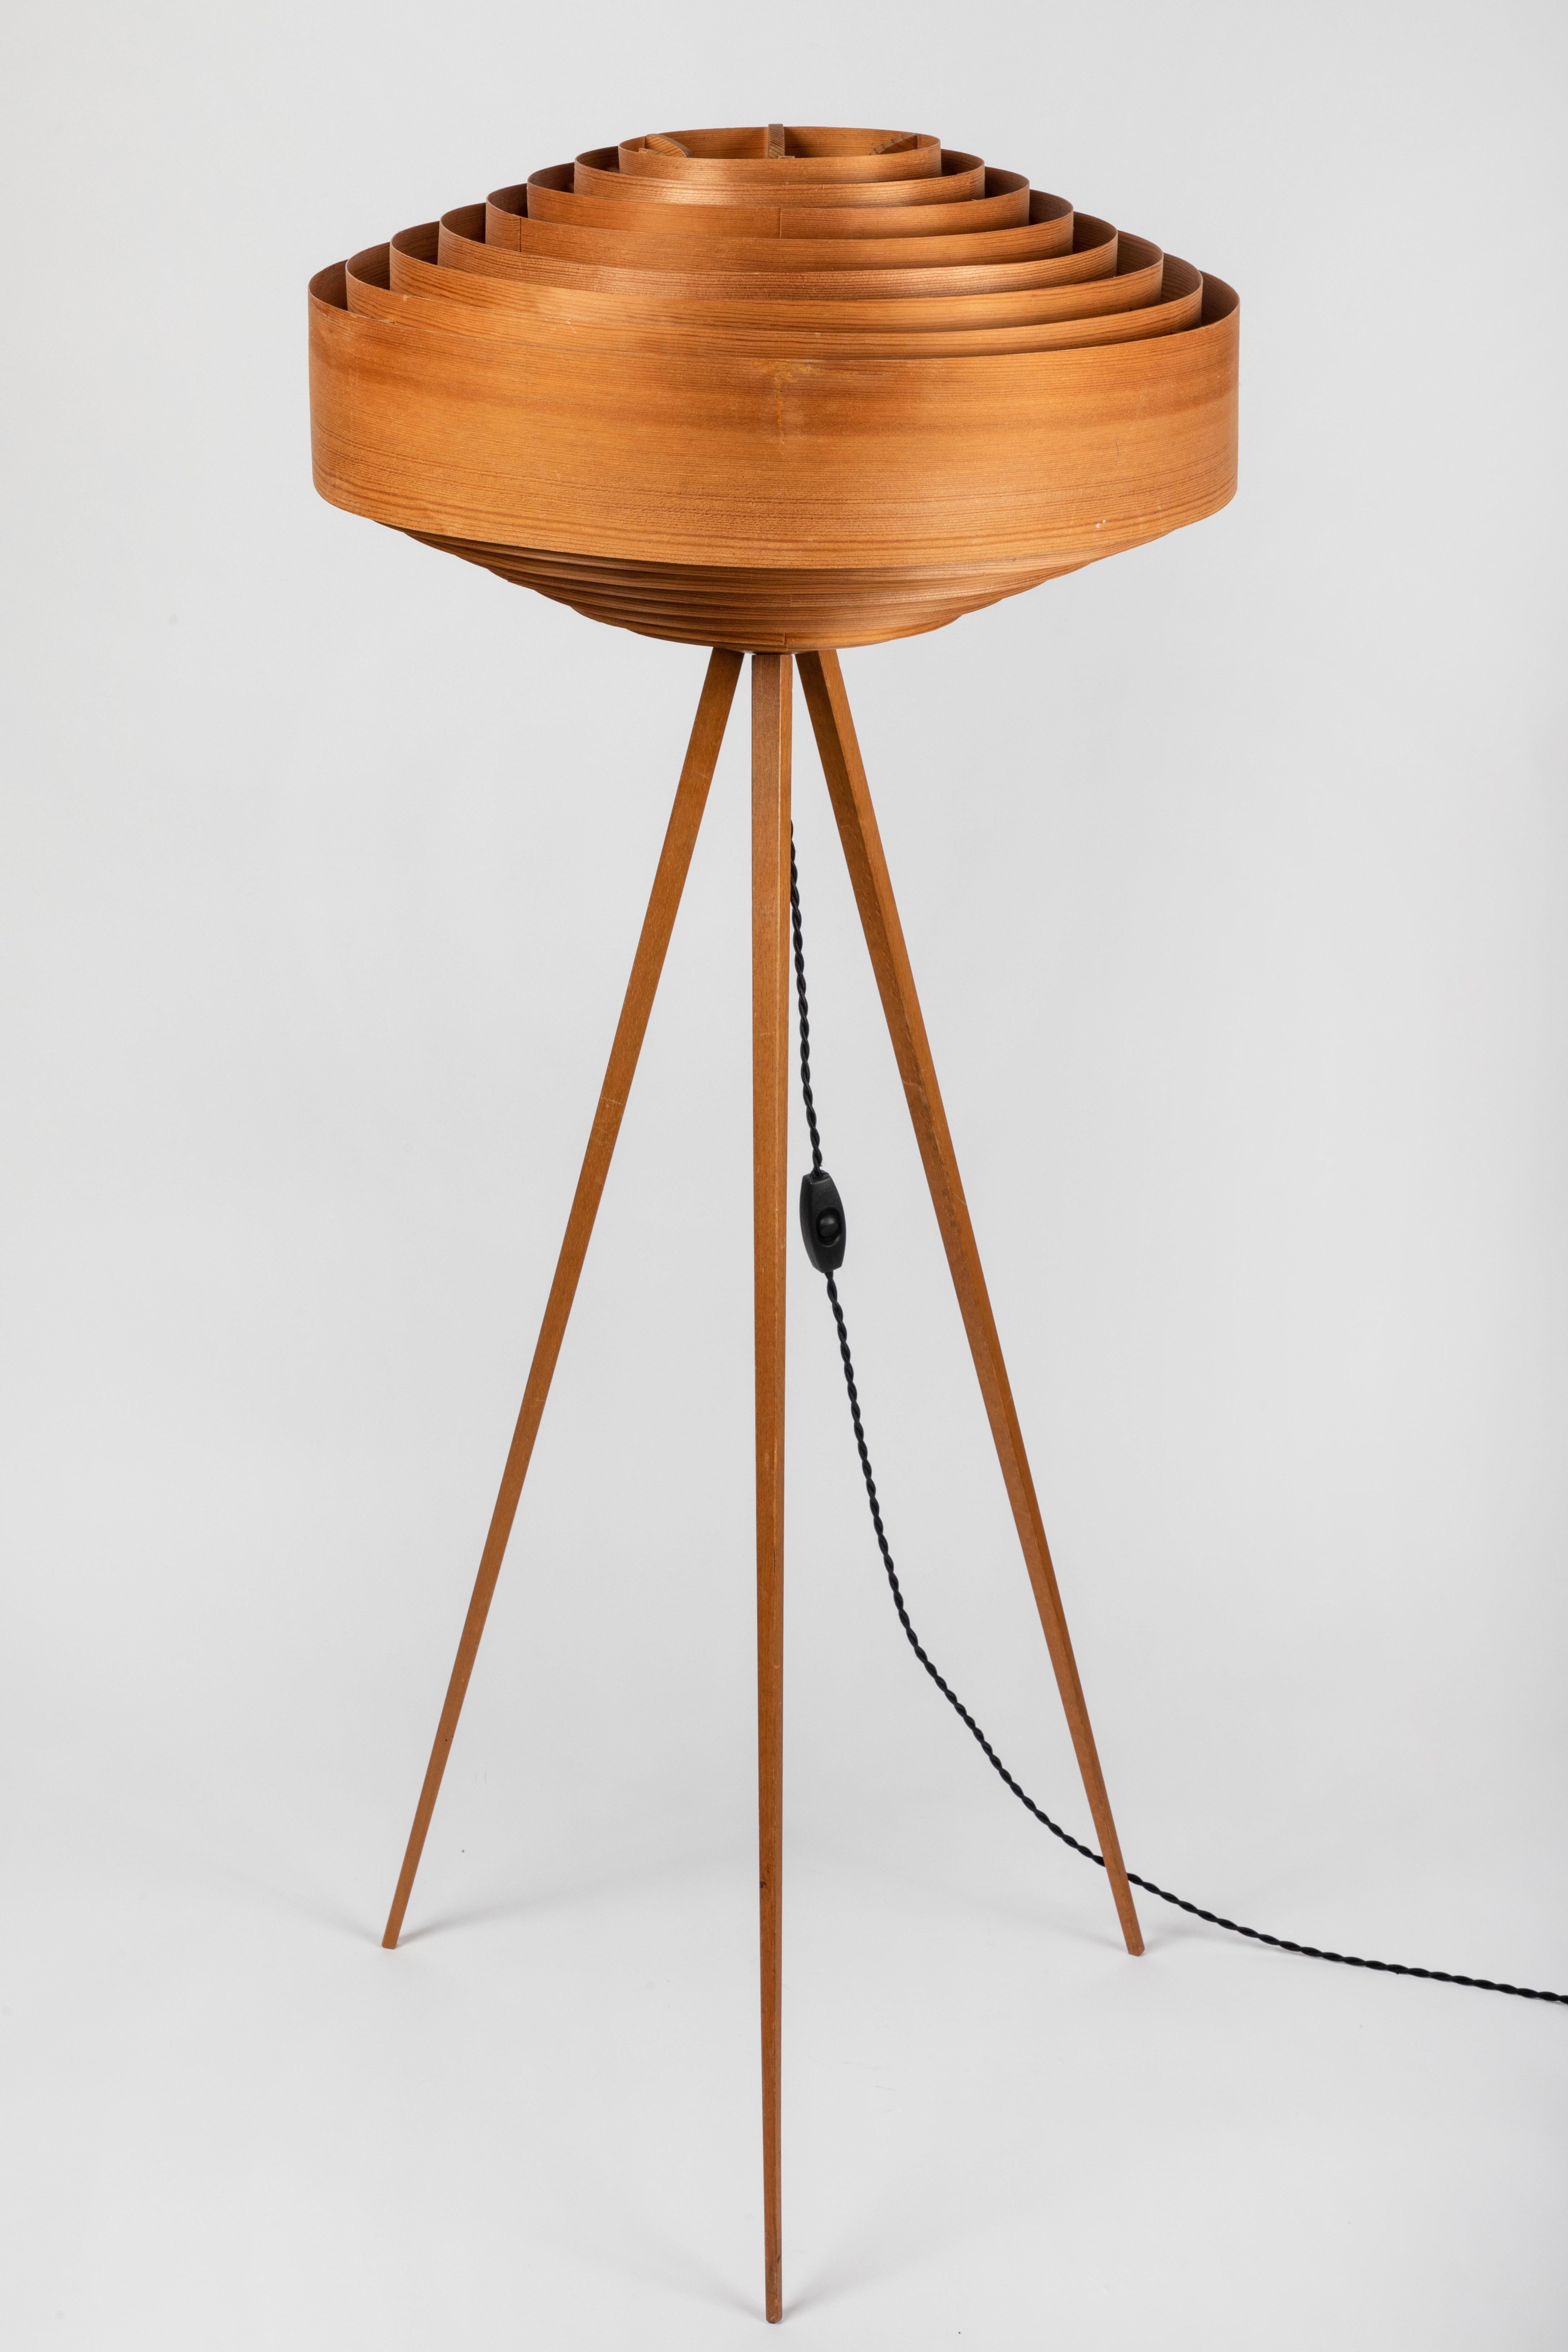 1960s Hans-Agne Jakobsson Wood Tripod Floor Lamp for AB Ellysett 7